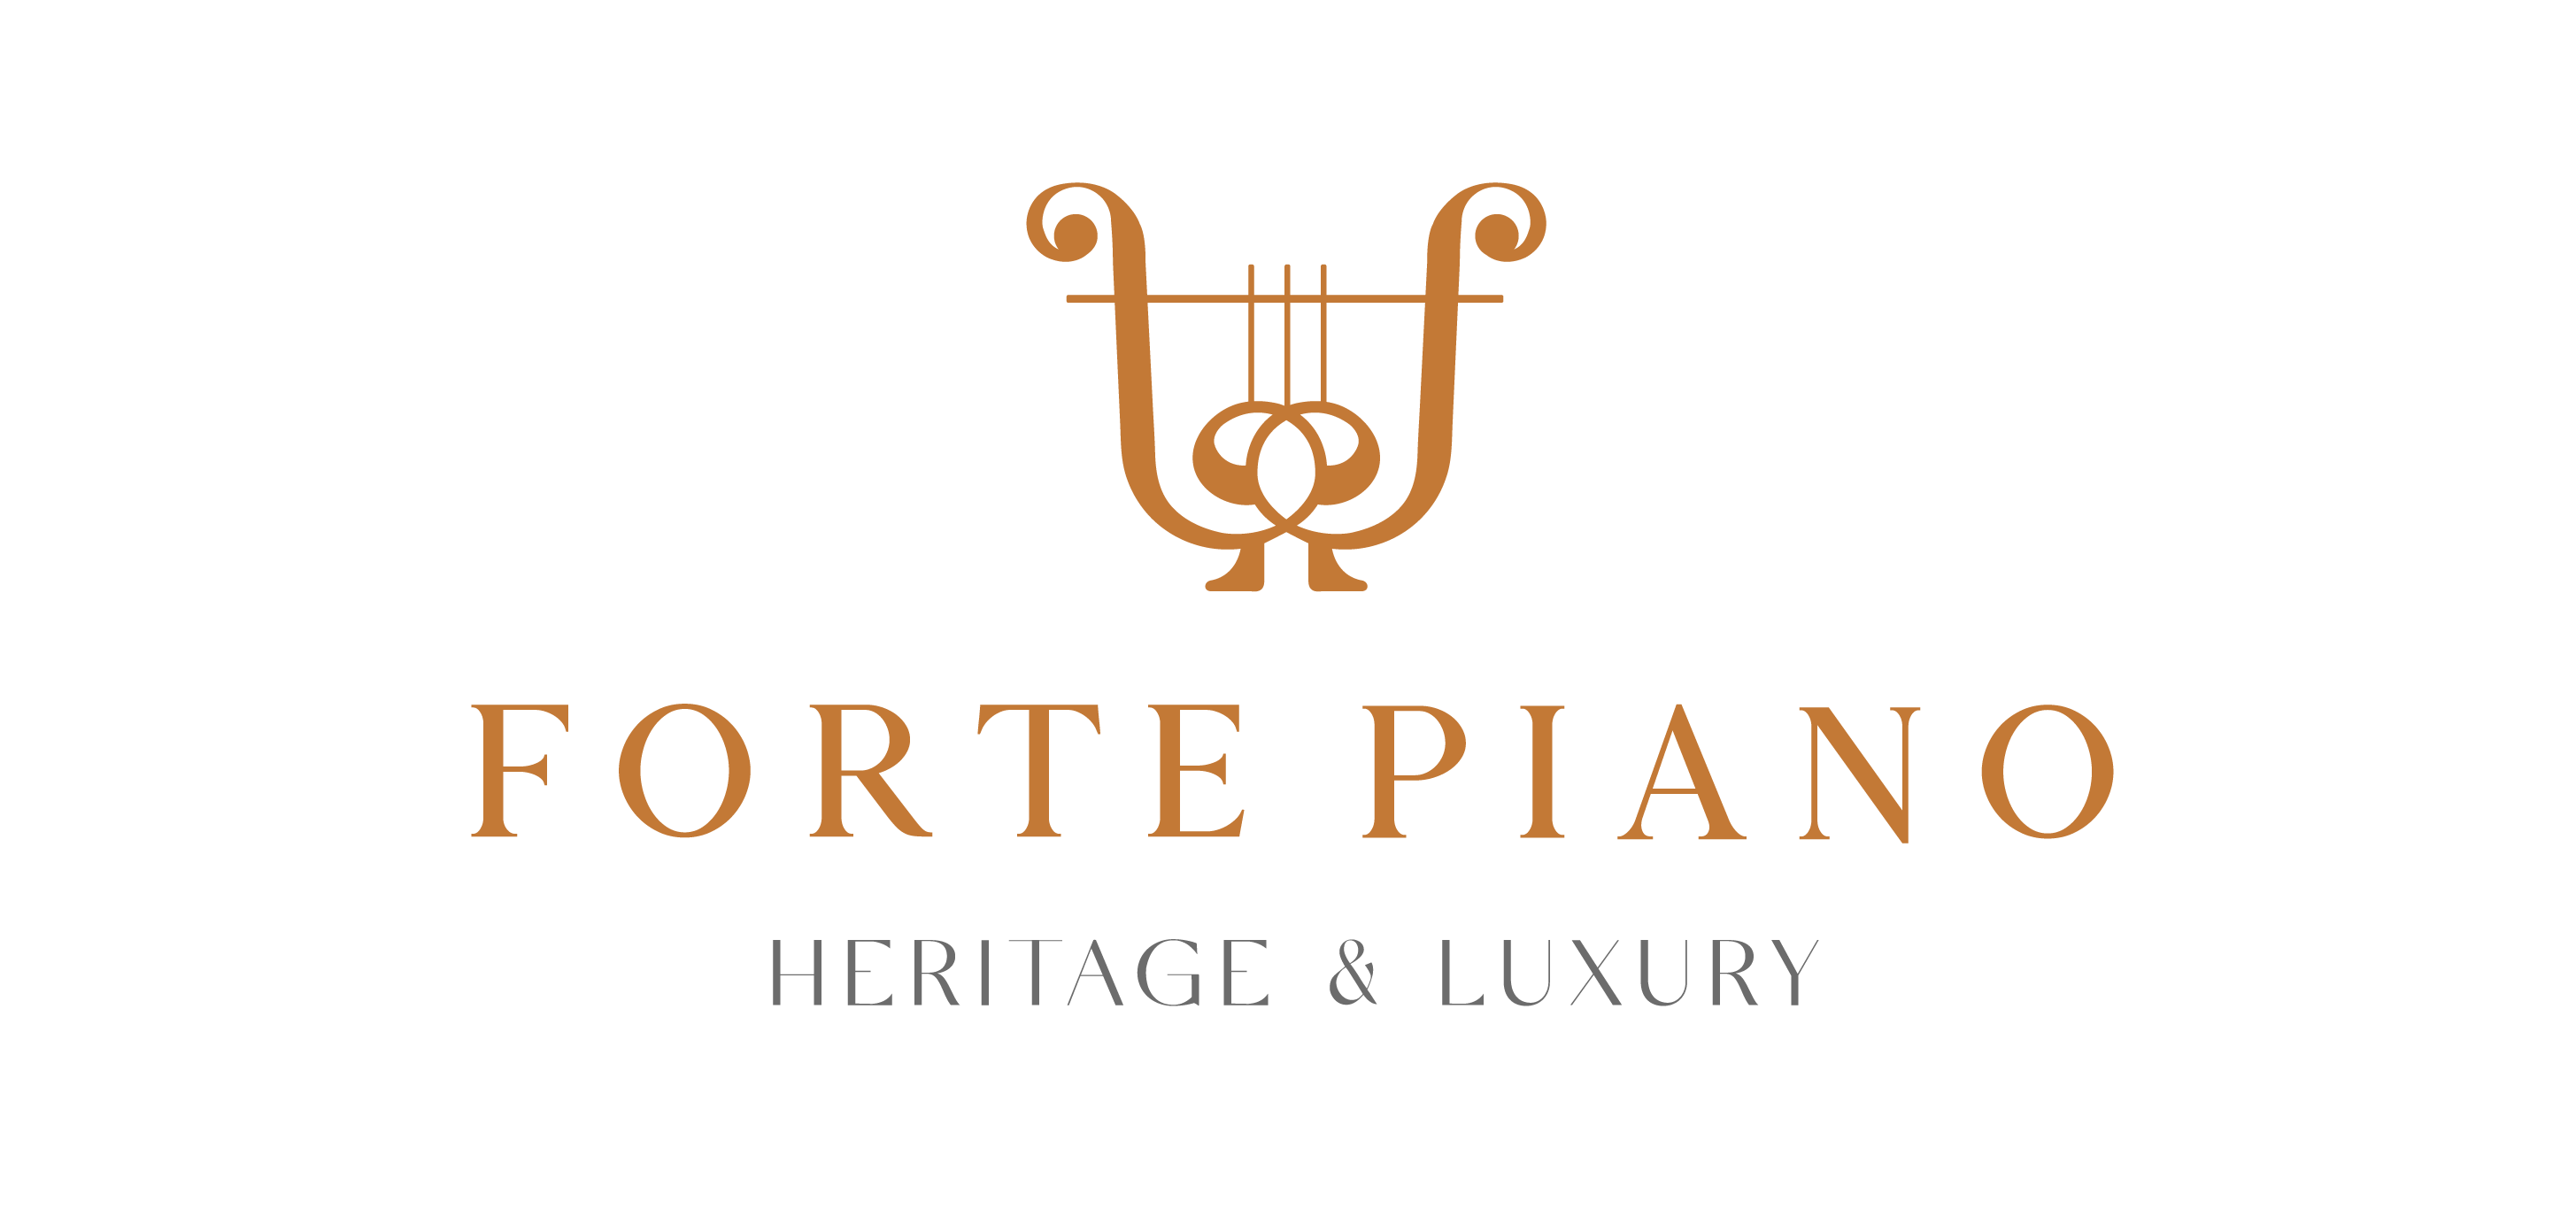 Forte Piano Heritage & Luxury